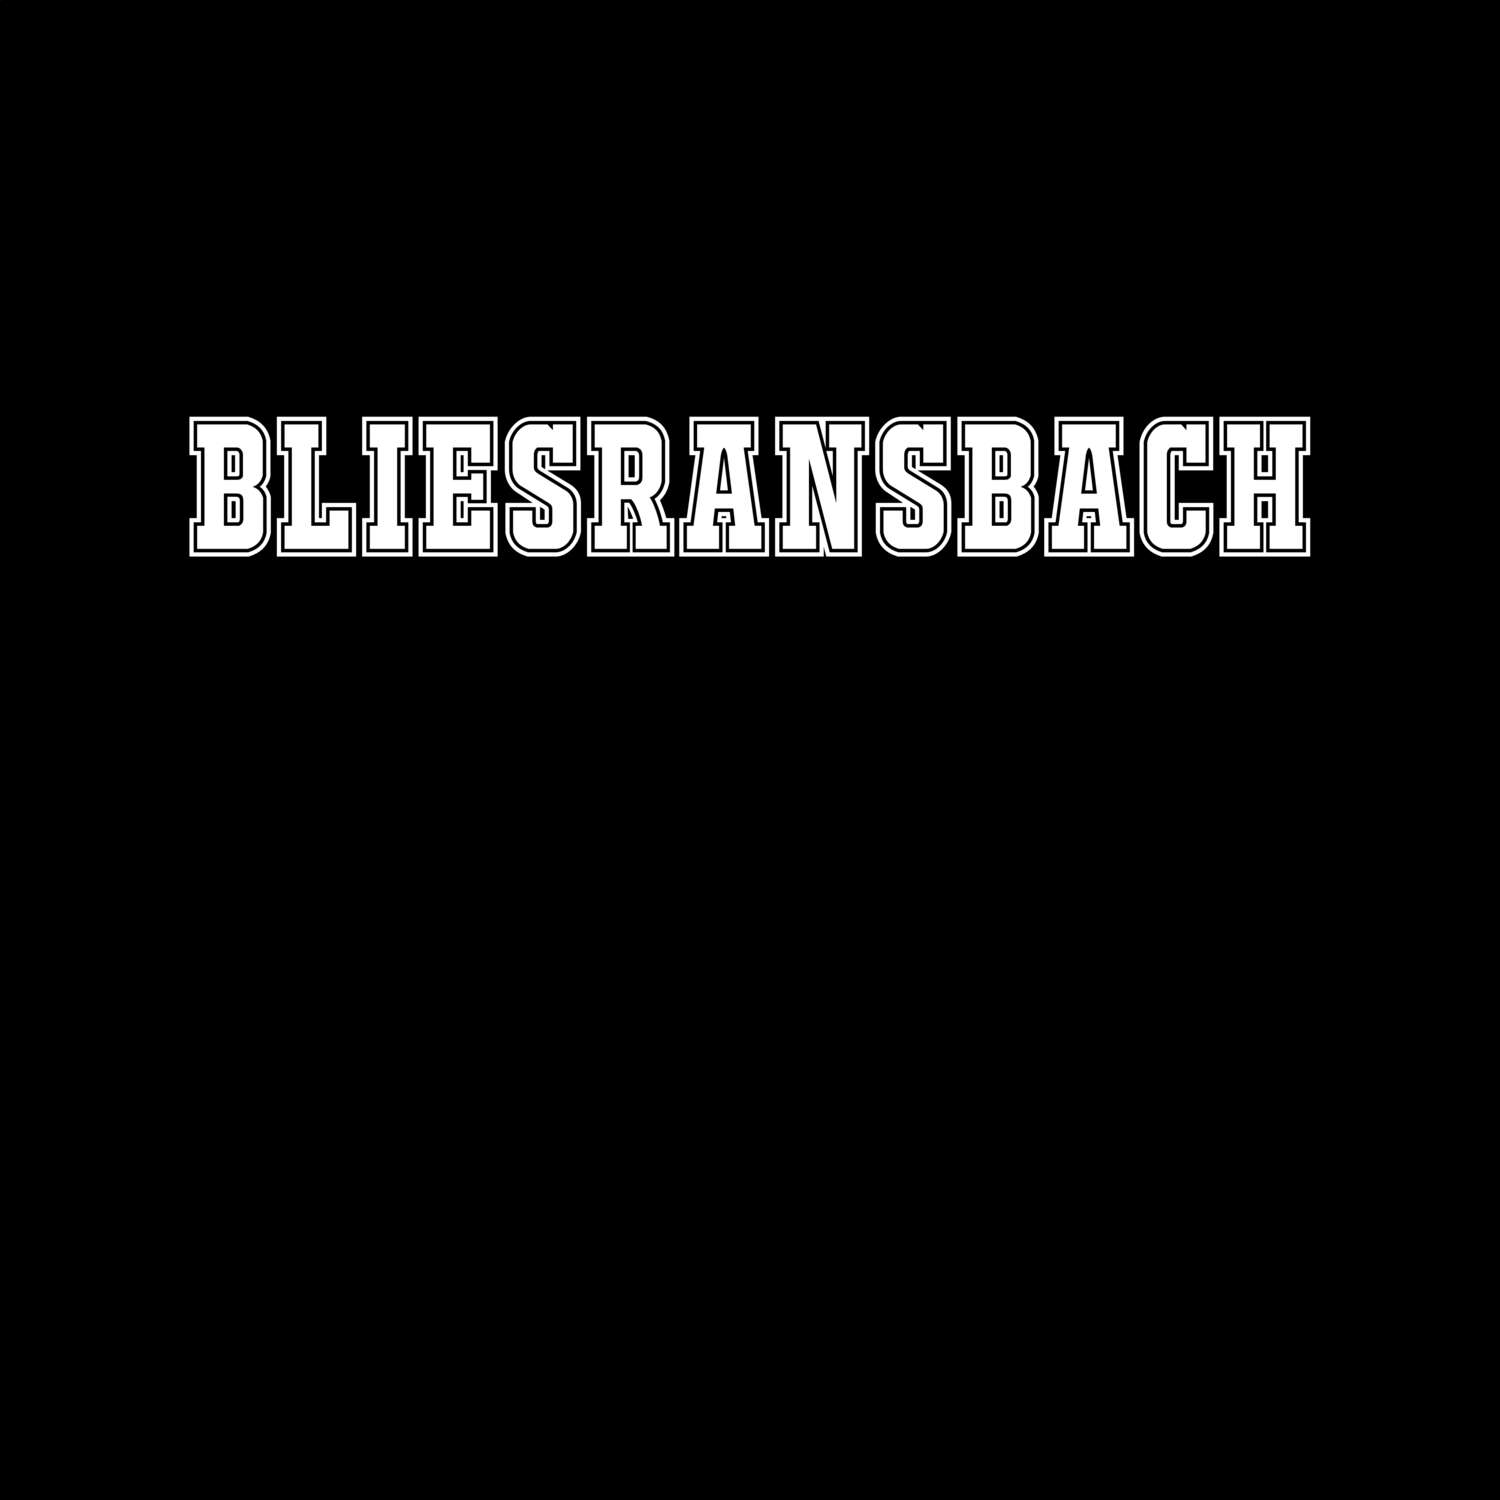 Bliesransbach T-Shirt »Classic«